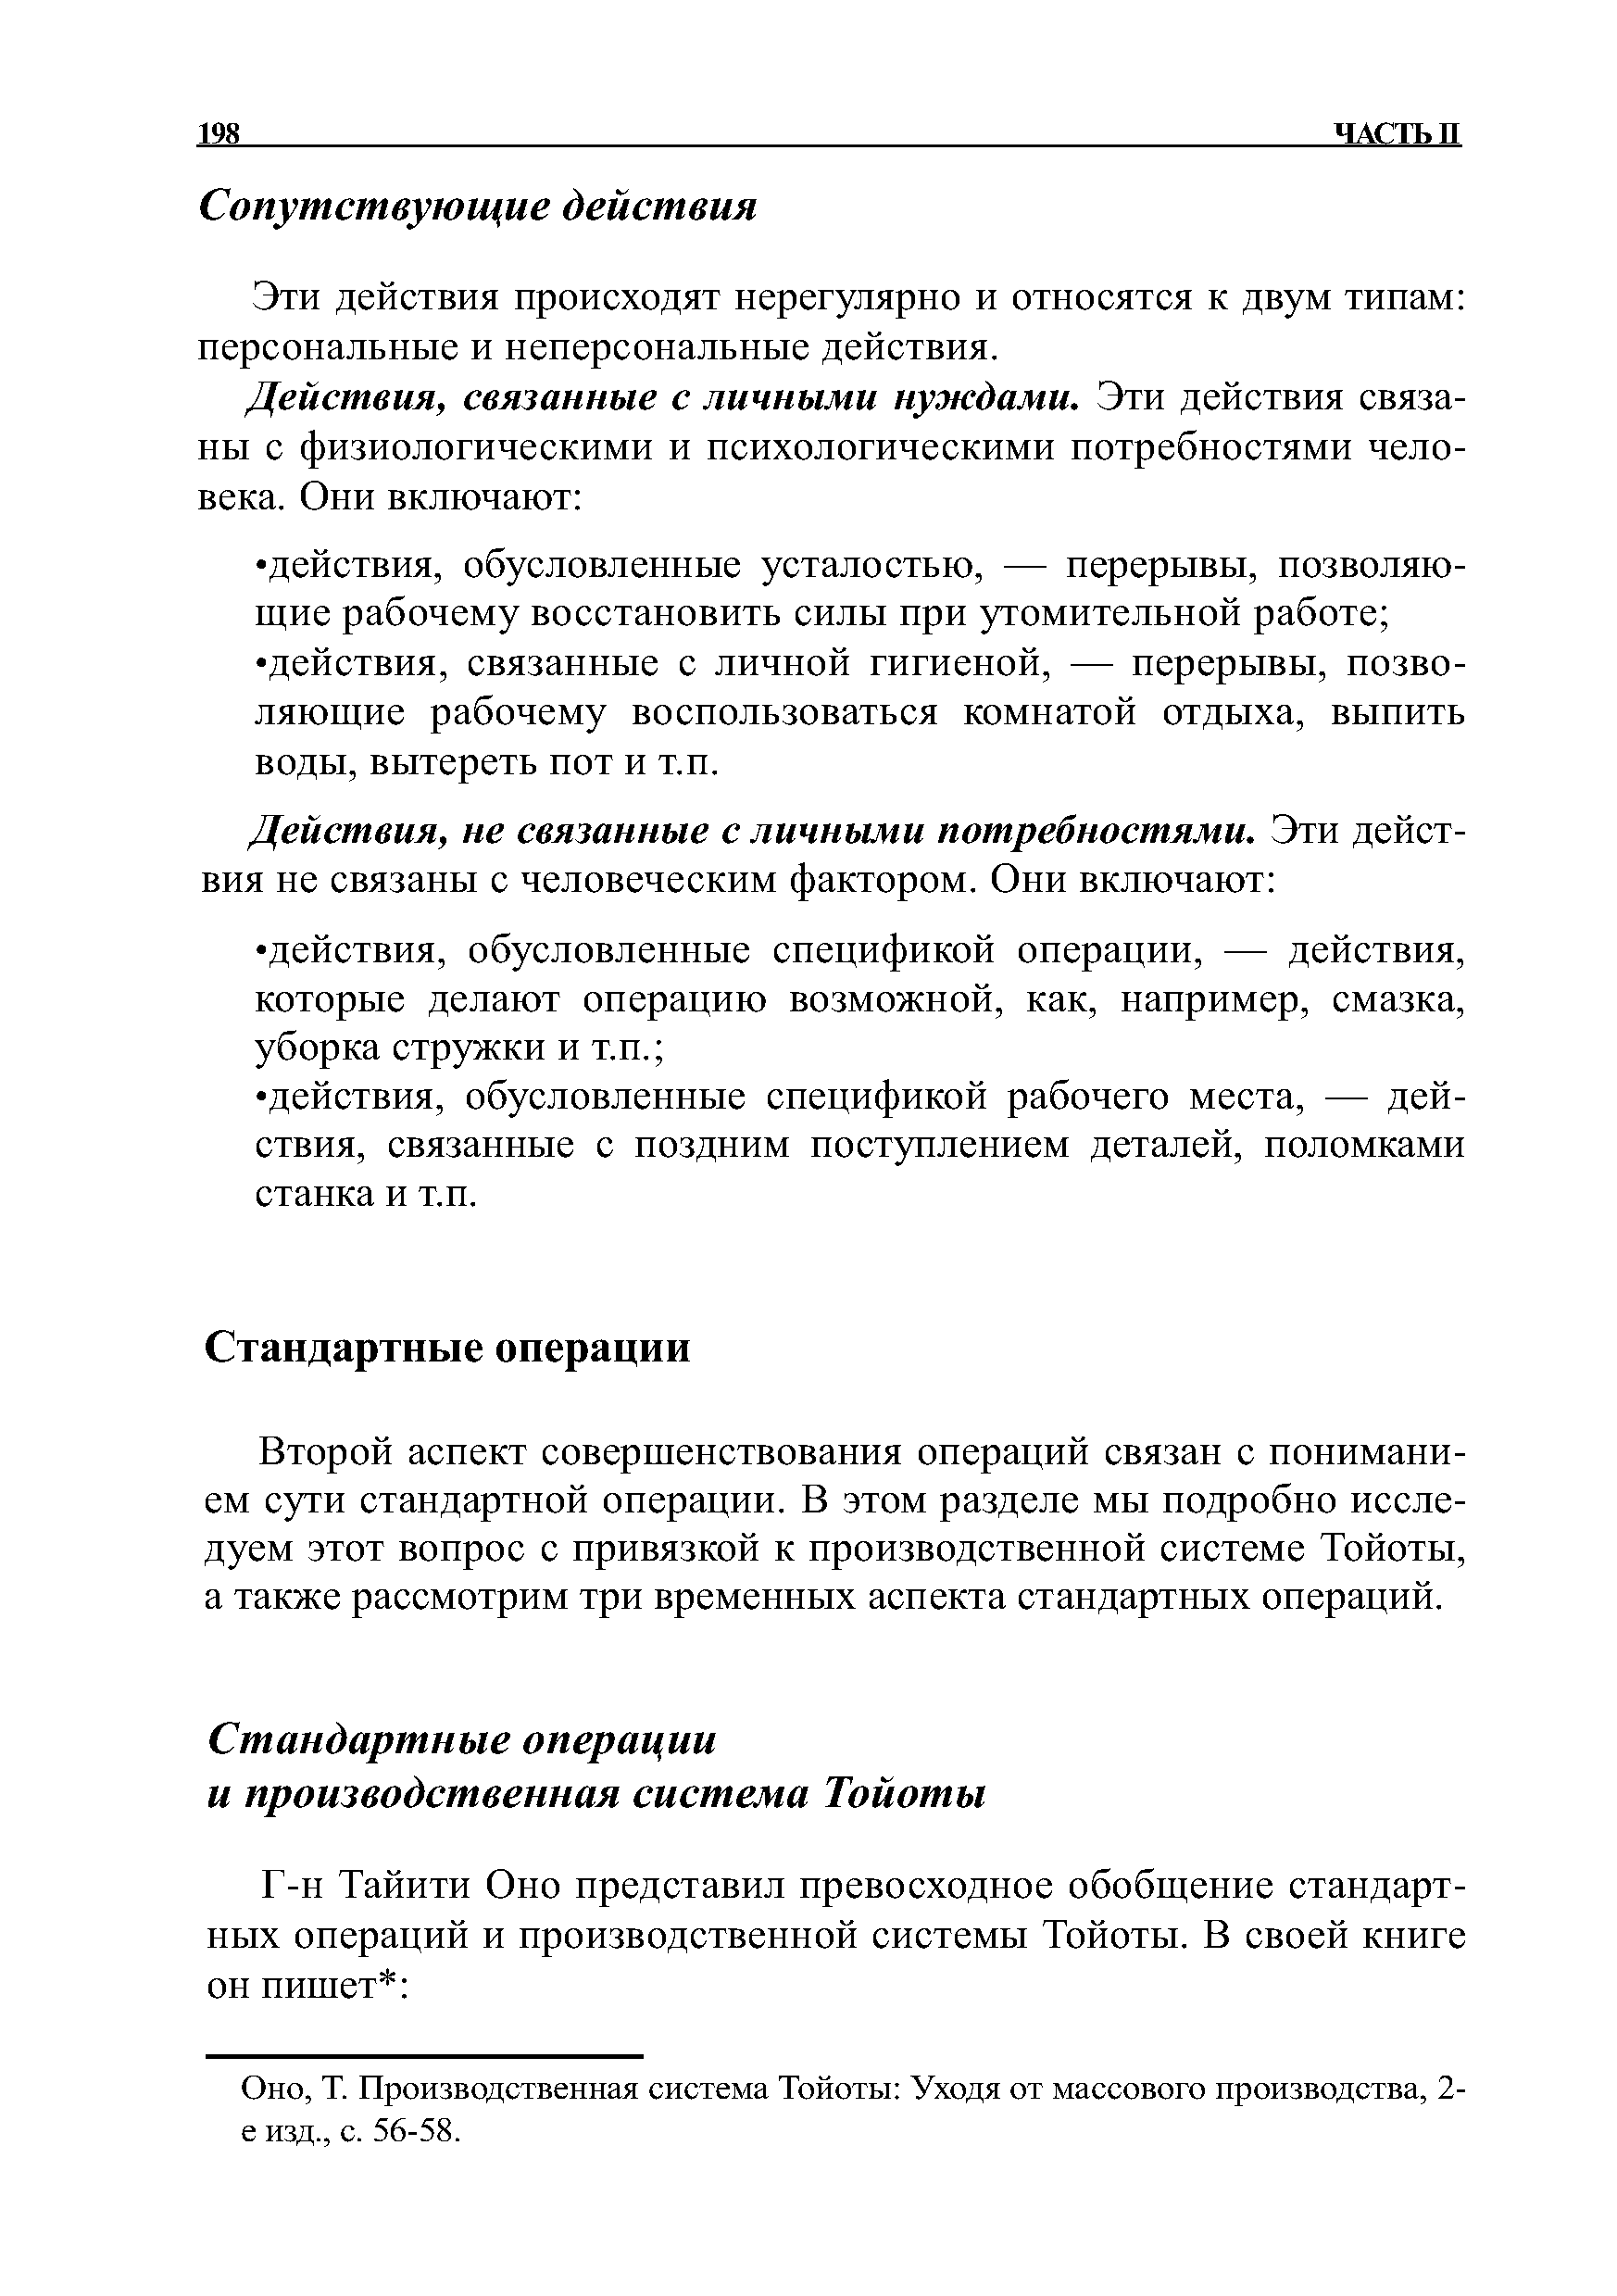 Производственная система Тойоты Уходя от массового производства, 2-е изд., с. 56-58.
